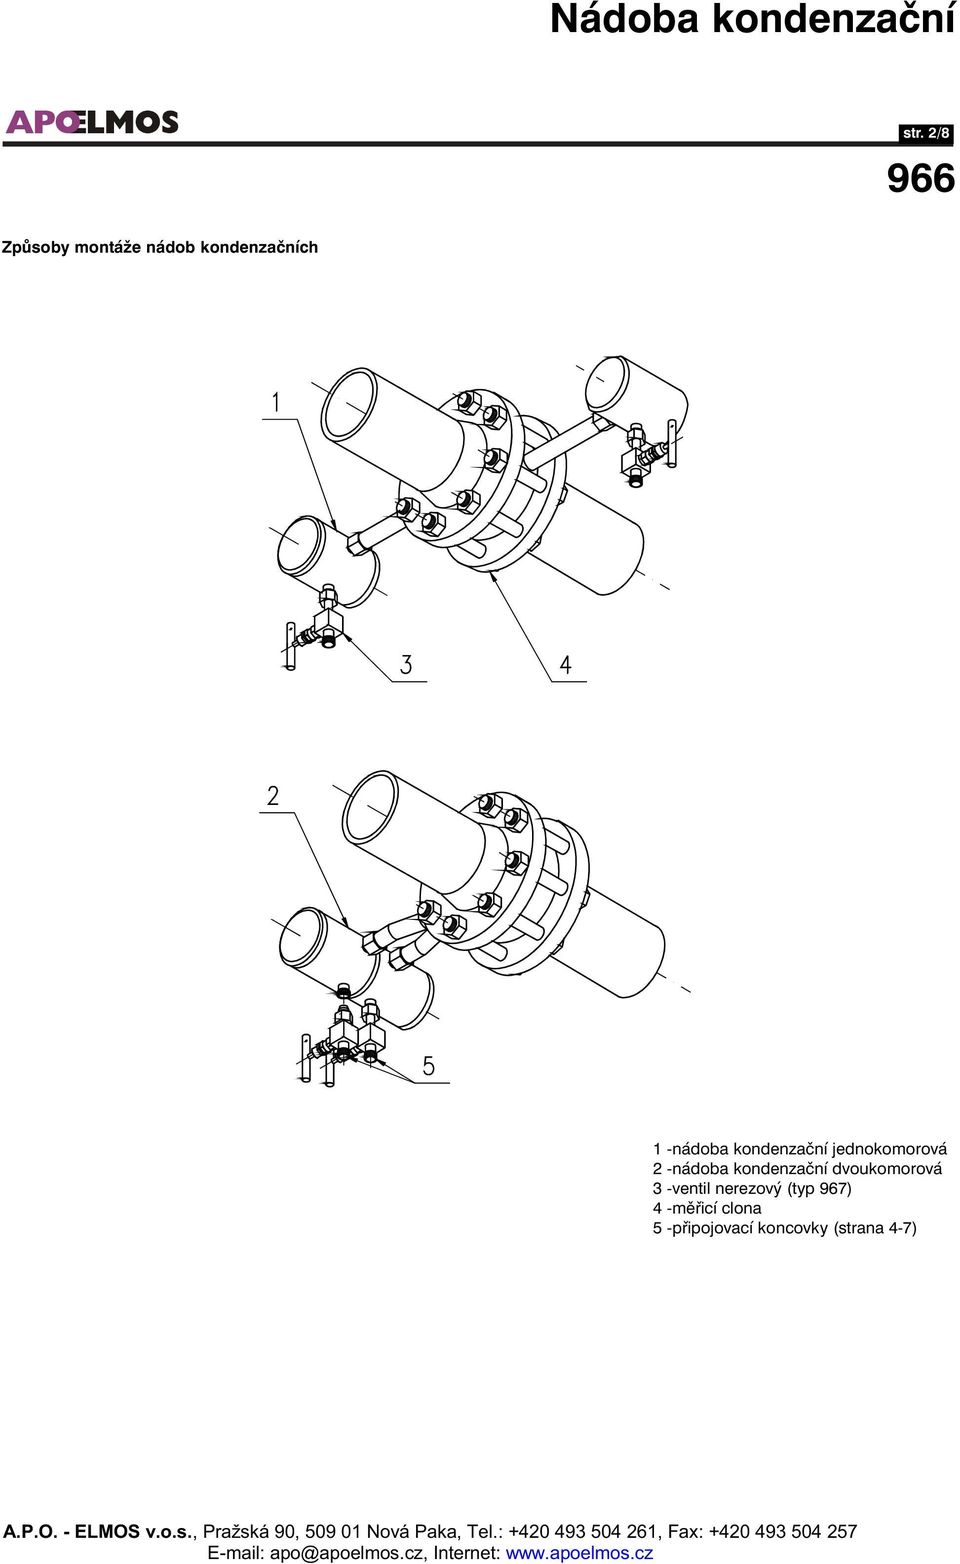 kondenzační dvoukomorová 3 -ventil nerezový (typ